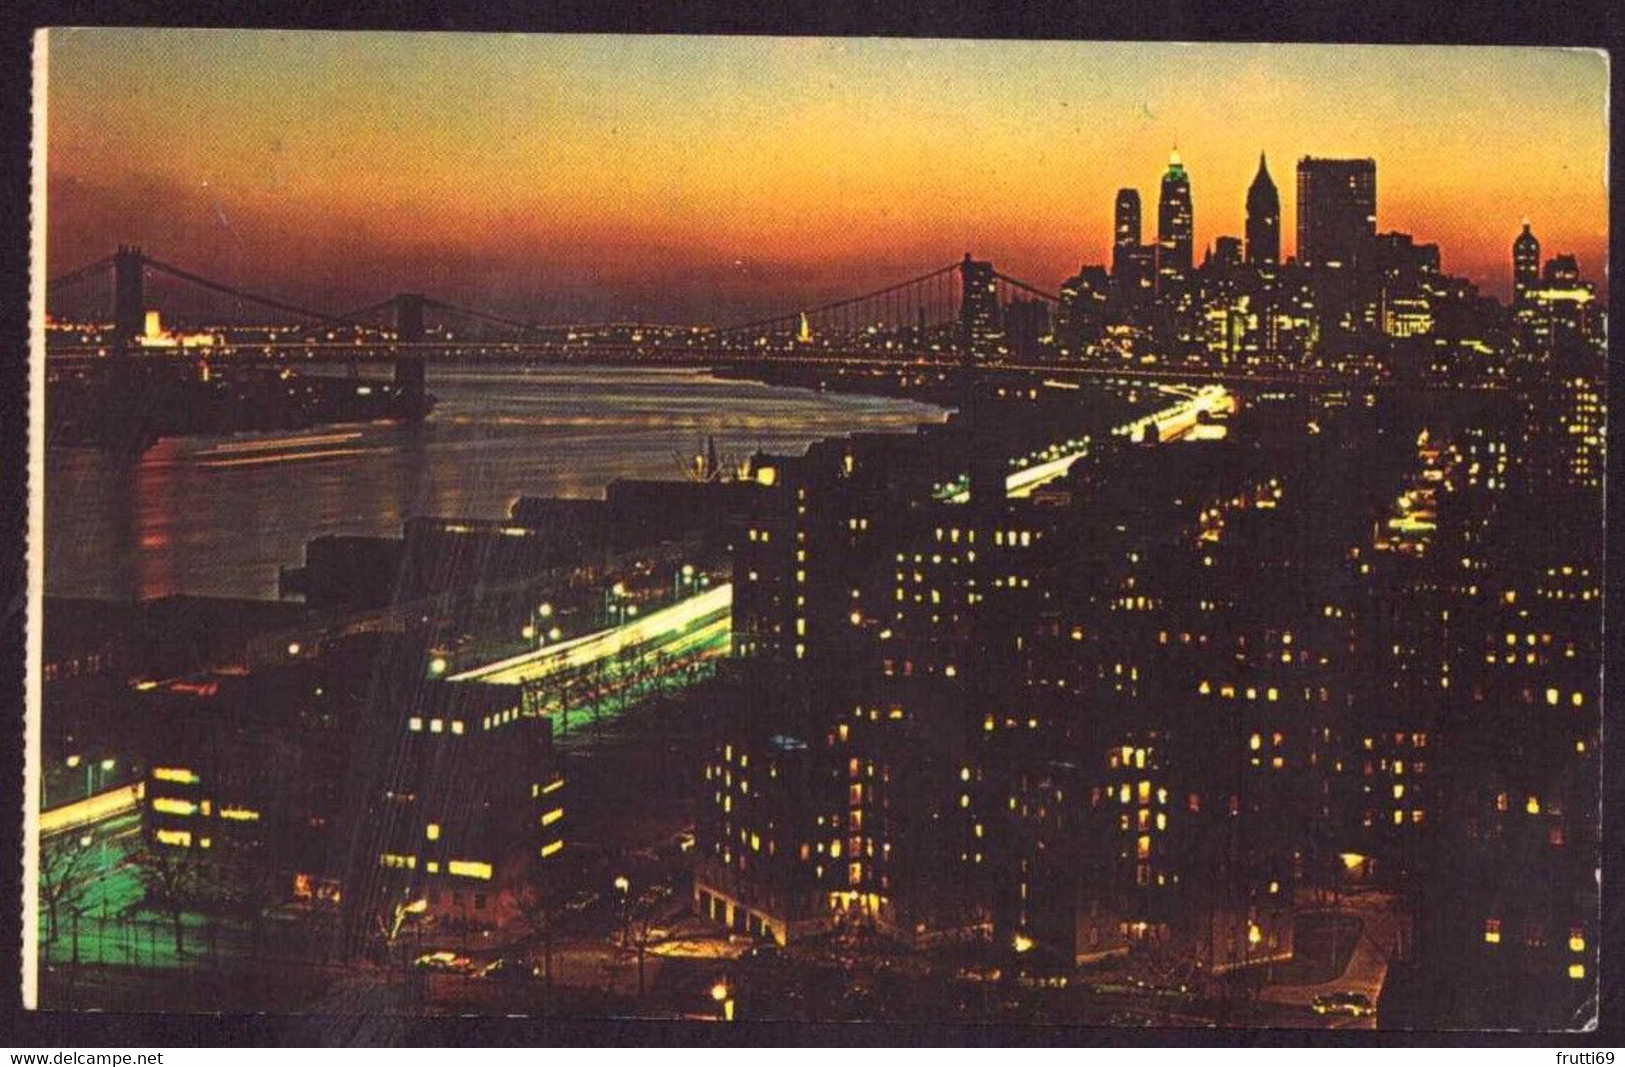 AK 076934 USA - New York City At Night - Panoramic Views